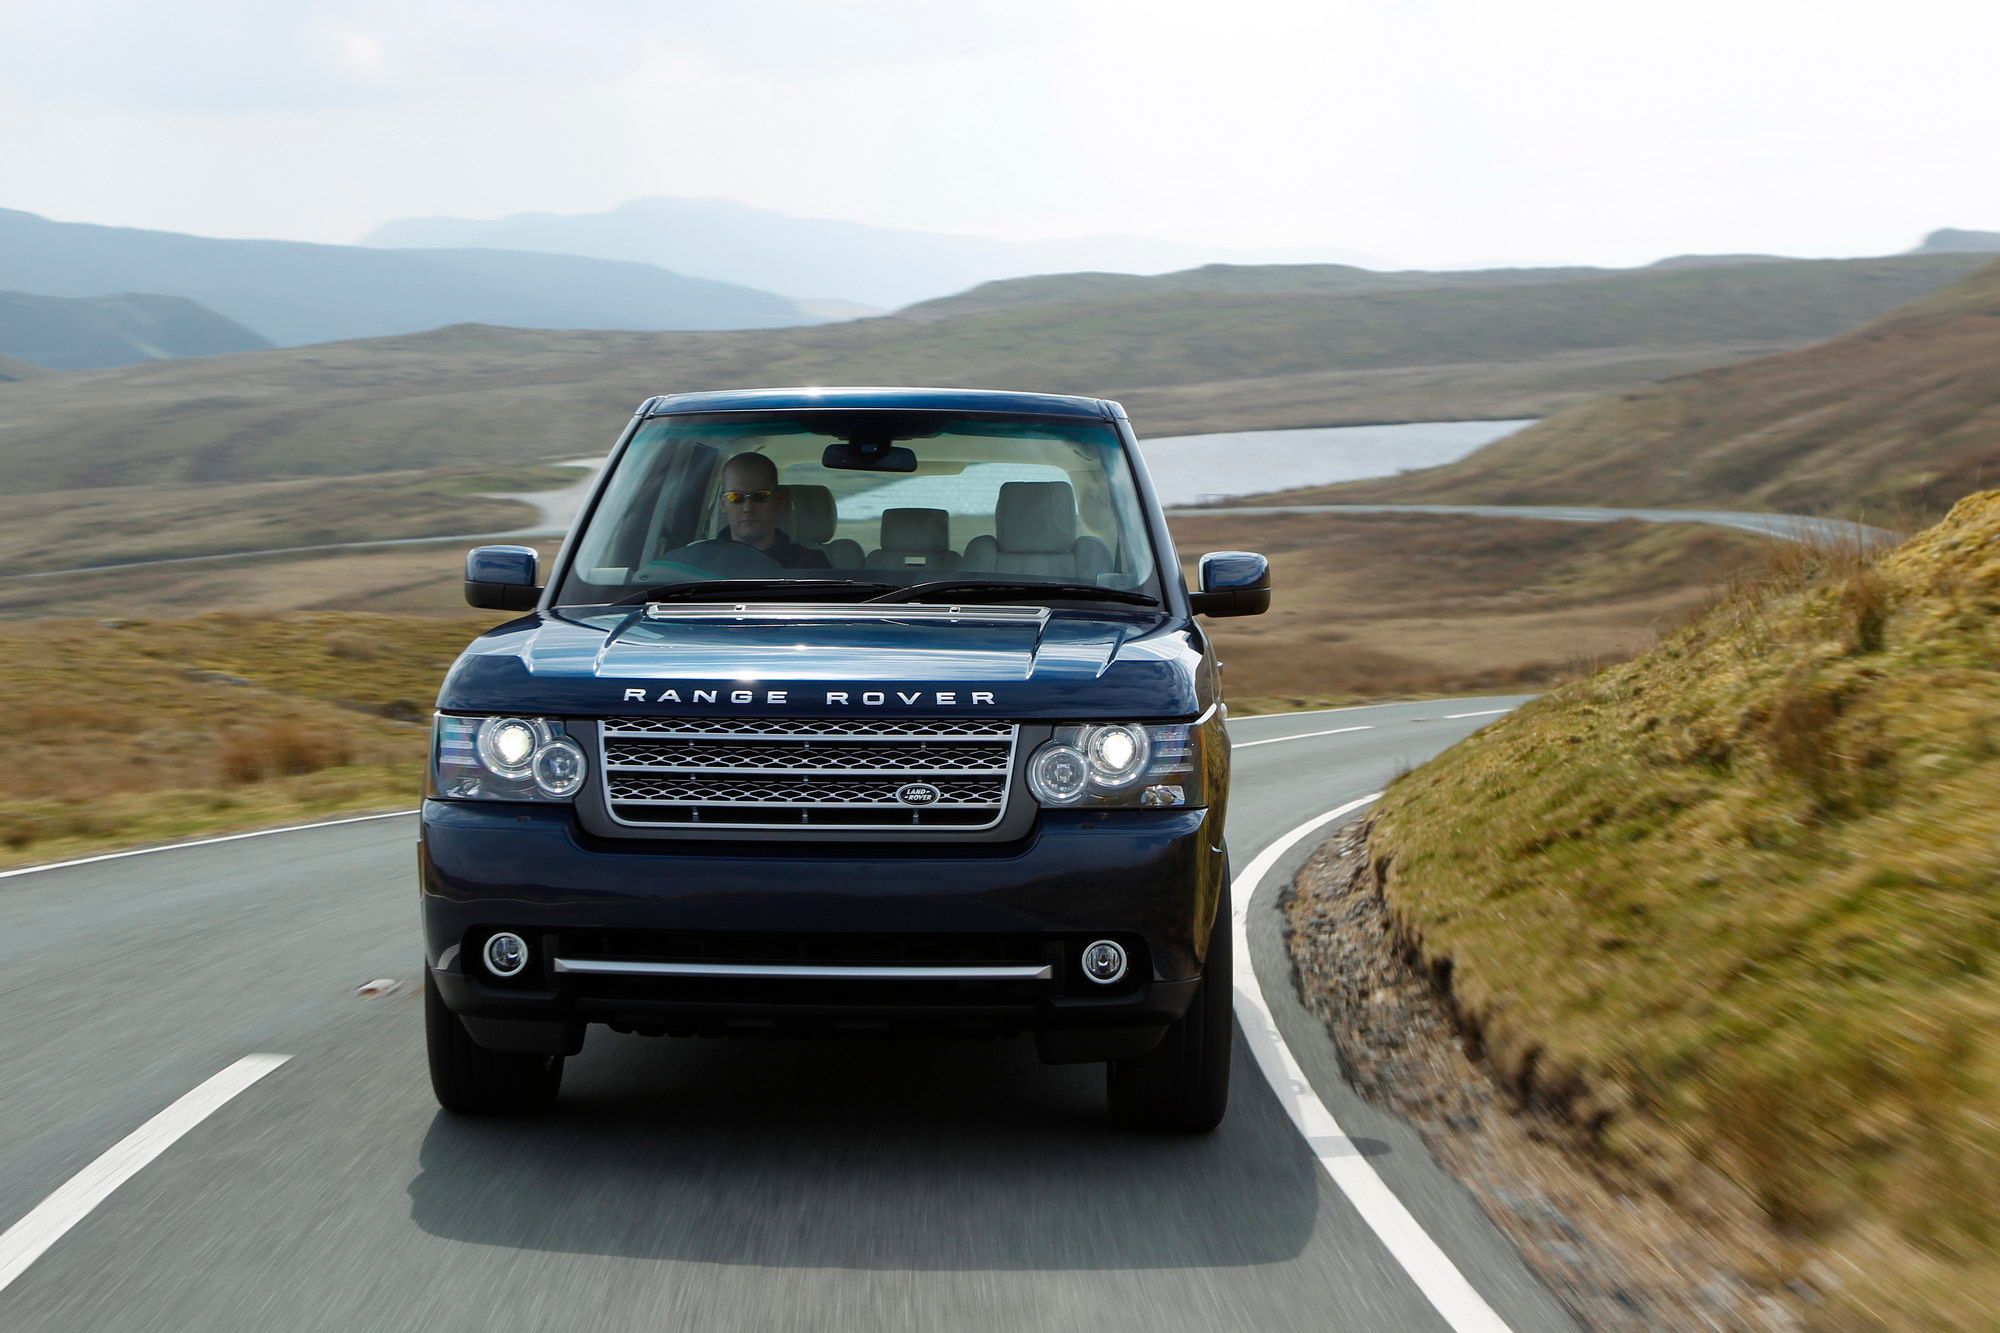 2011 Land Rover Range Rover